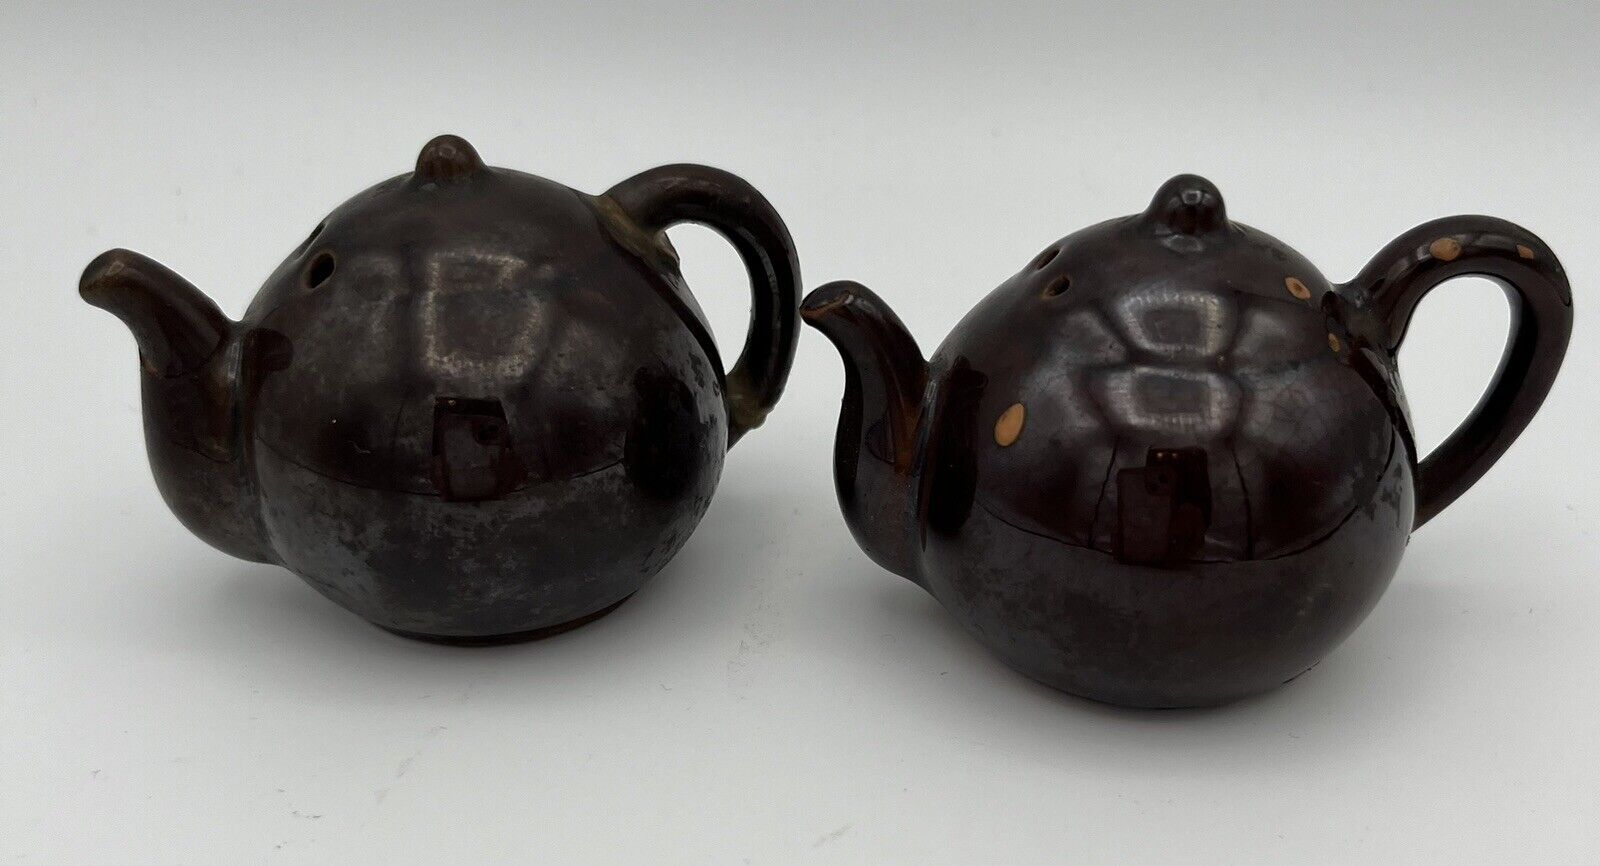 Vintage Brown Ceramic Tea Pot Kettle Salt & Pepper Shakers Set Made In JAPAN